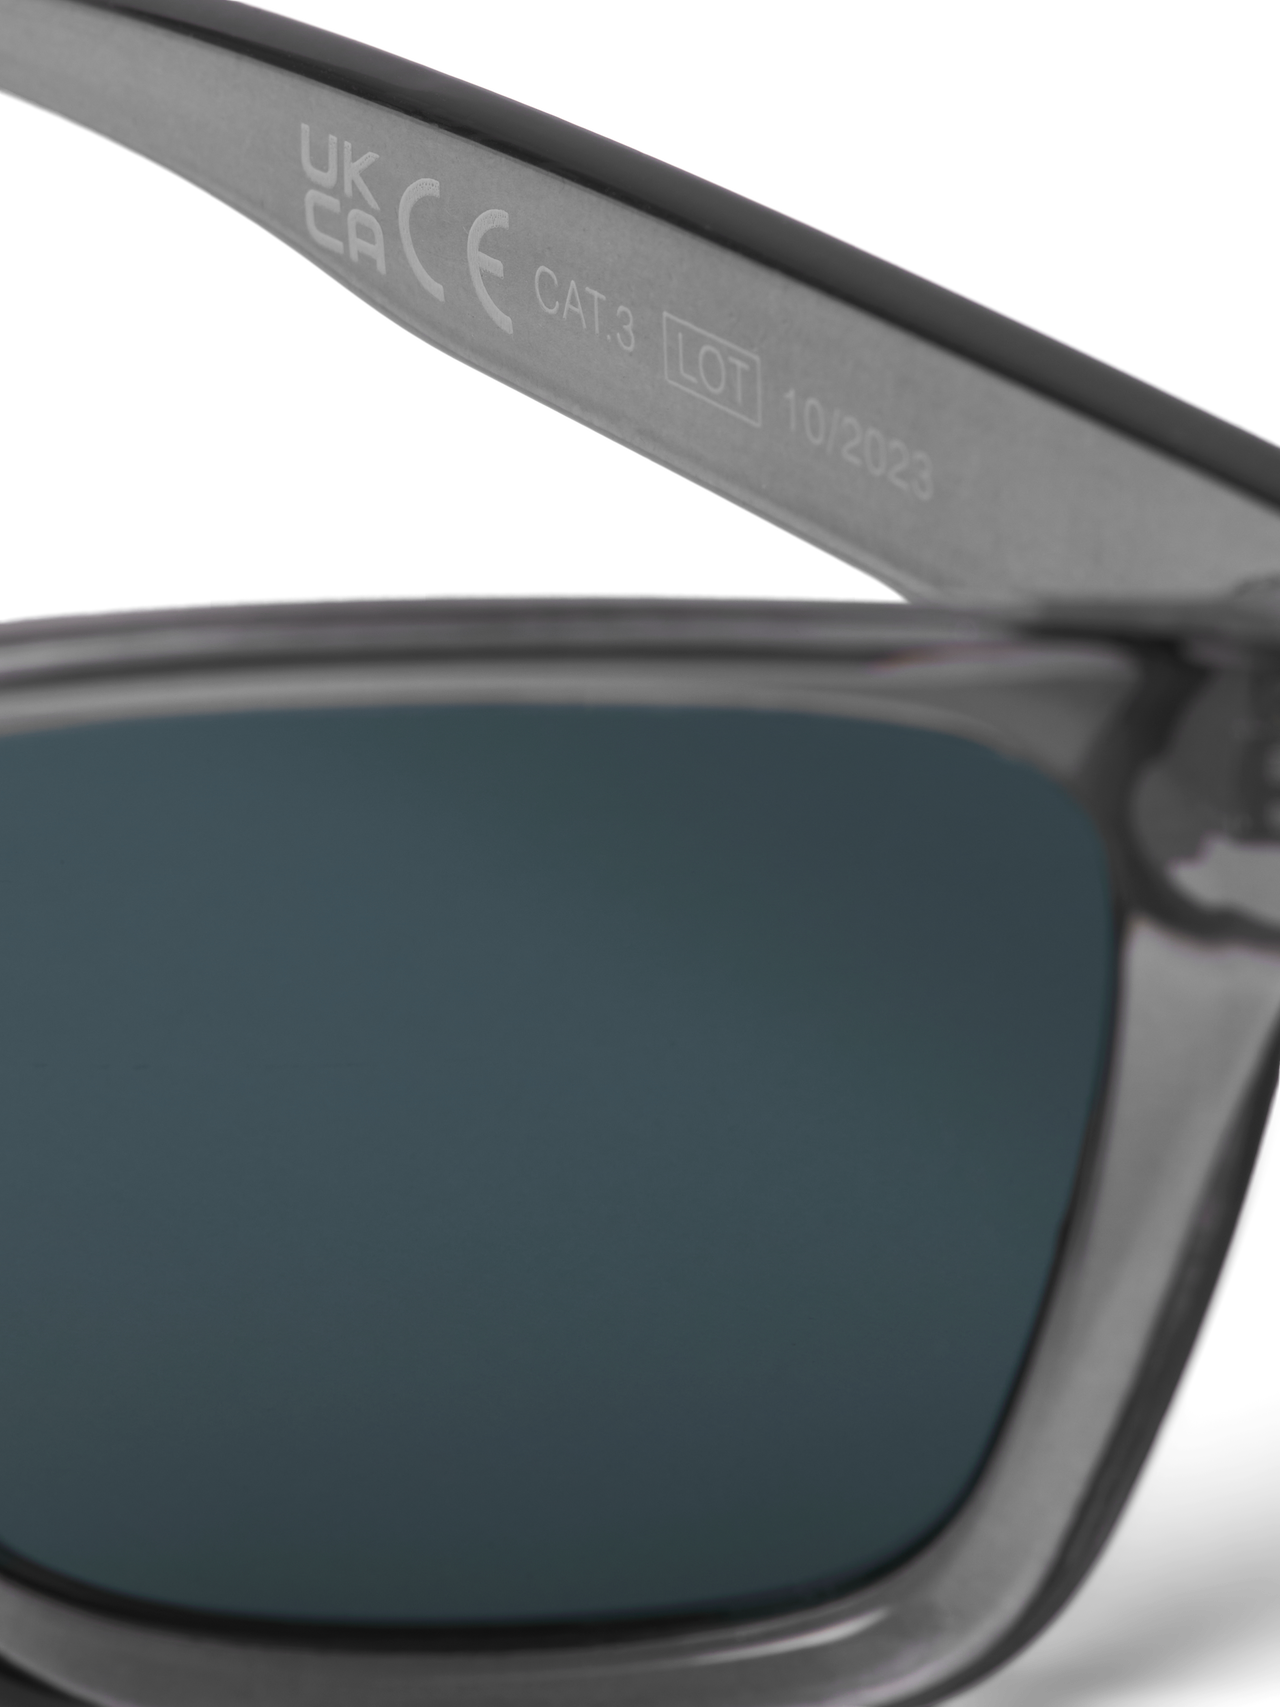 Jack & Jones Óculos de sol retangulares Plástico -Dark Grey - 12251480